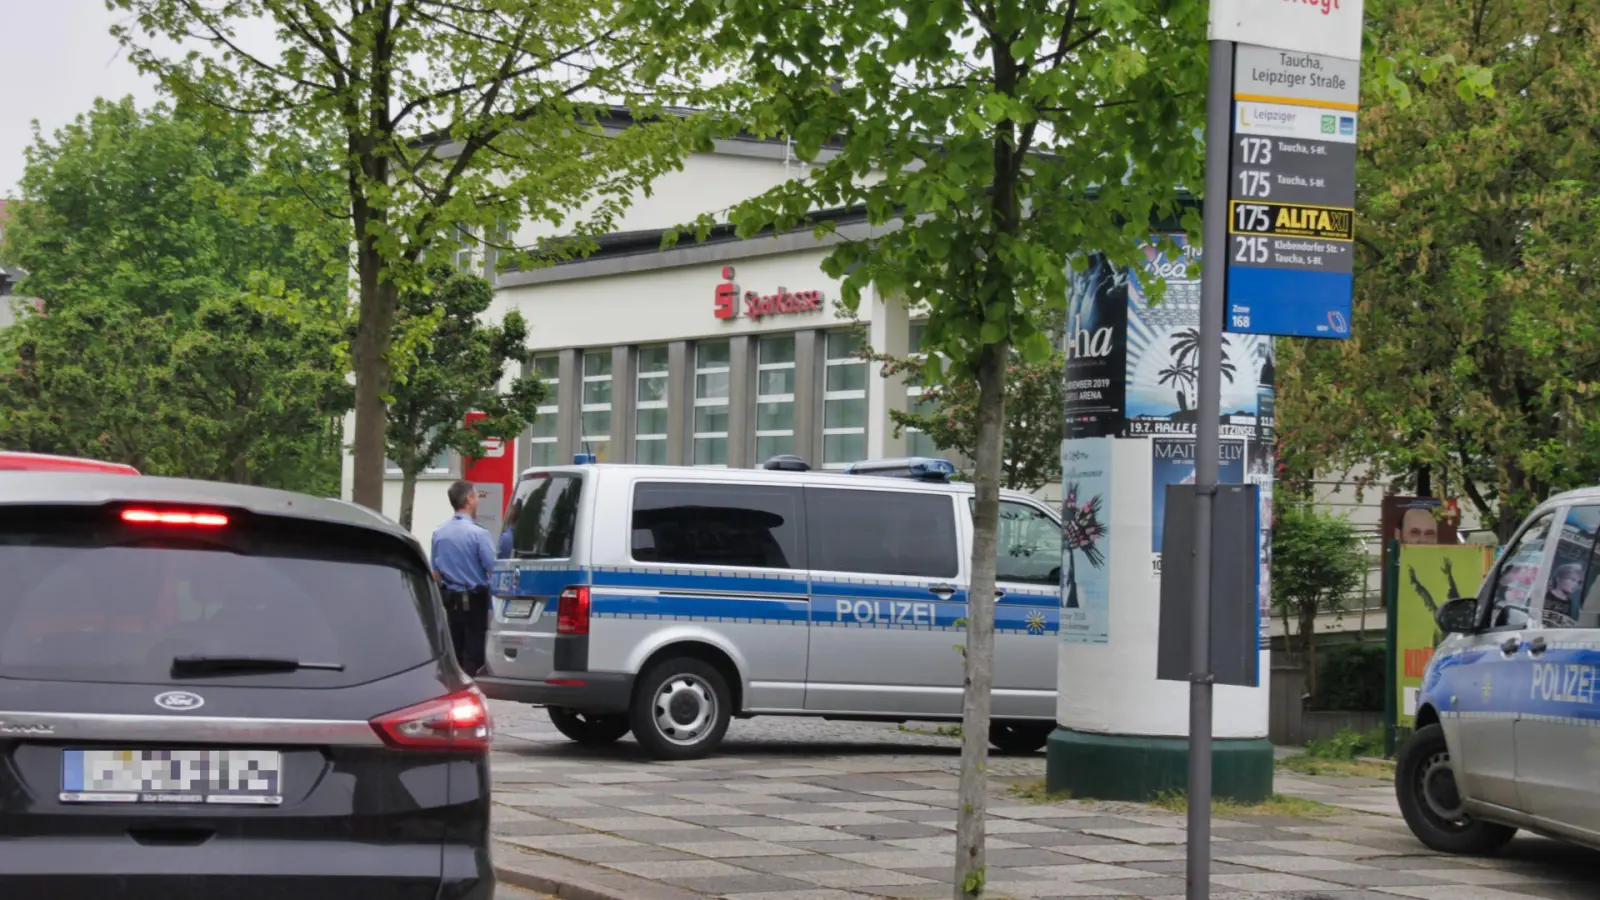 Morgendlicher Polizeieinsatz an der Sparkasse Taucha (Foto: taucha-kompakt.de)